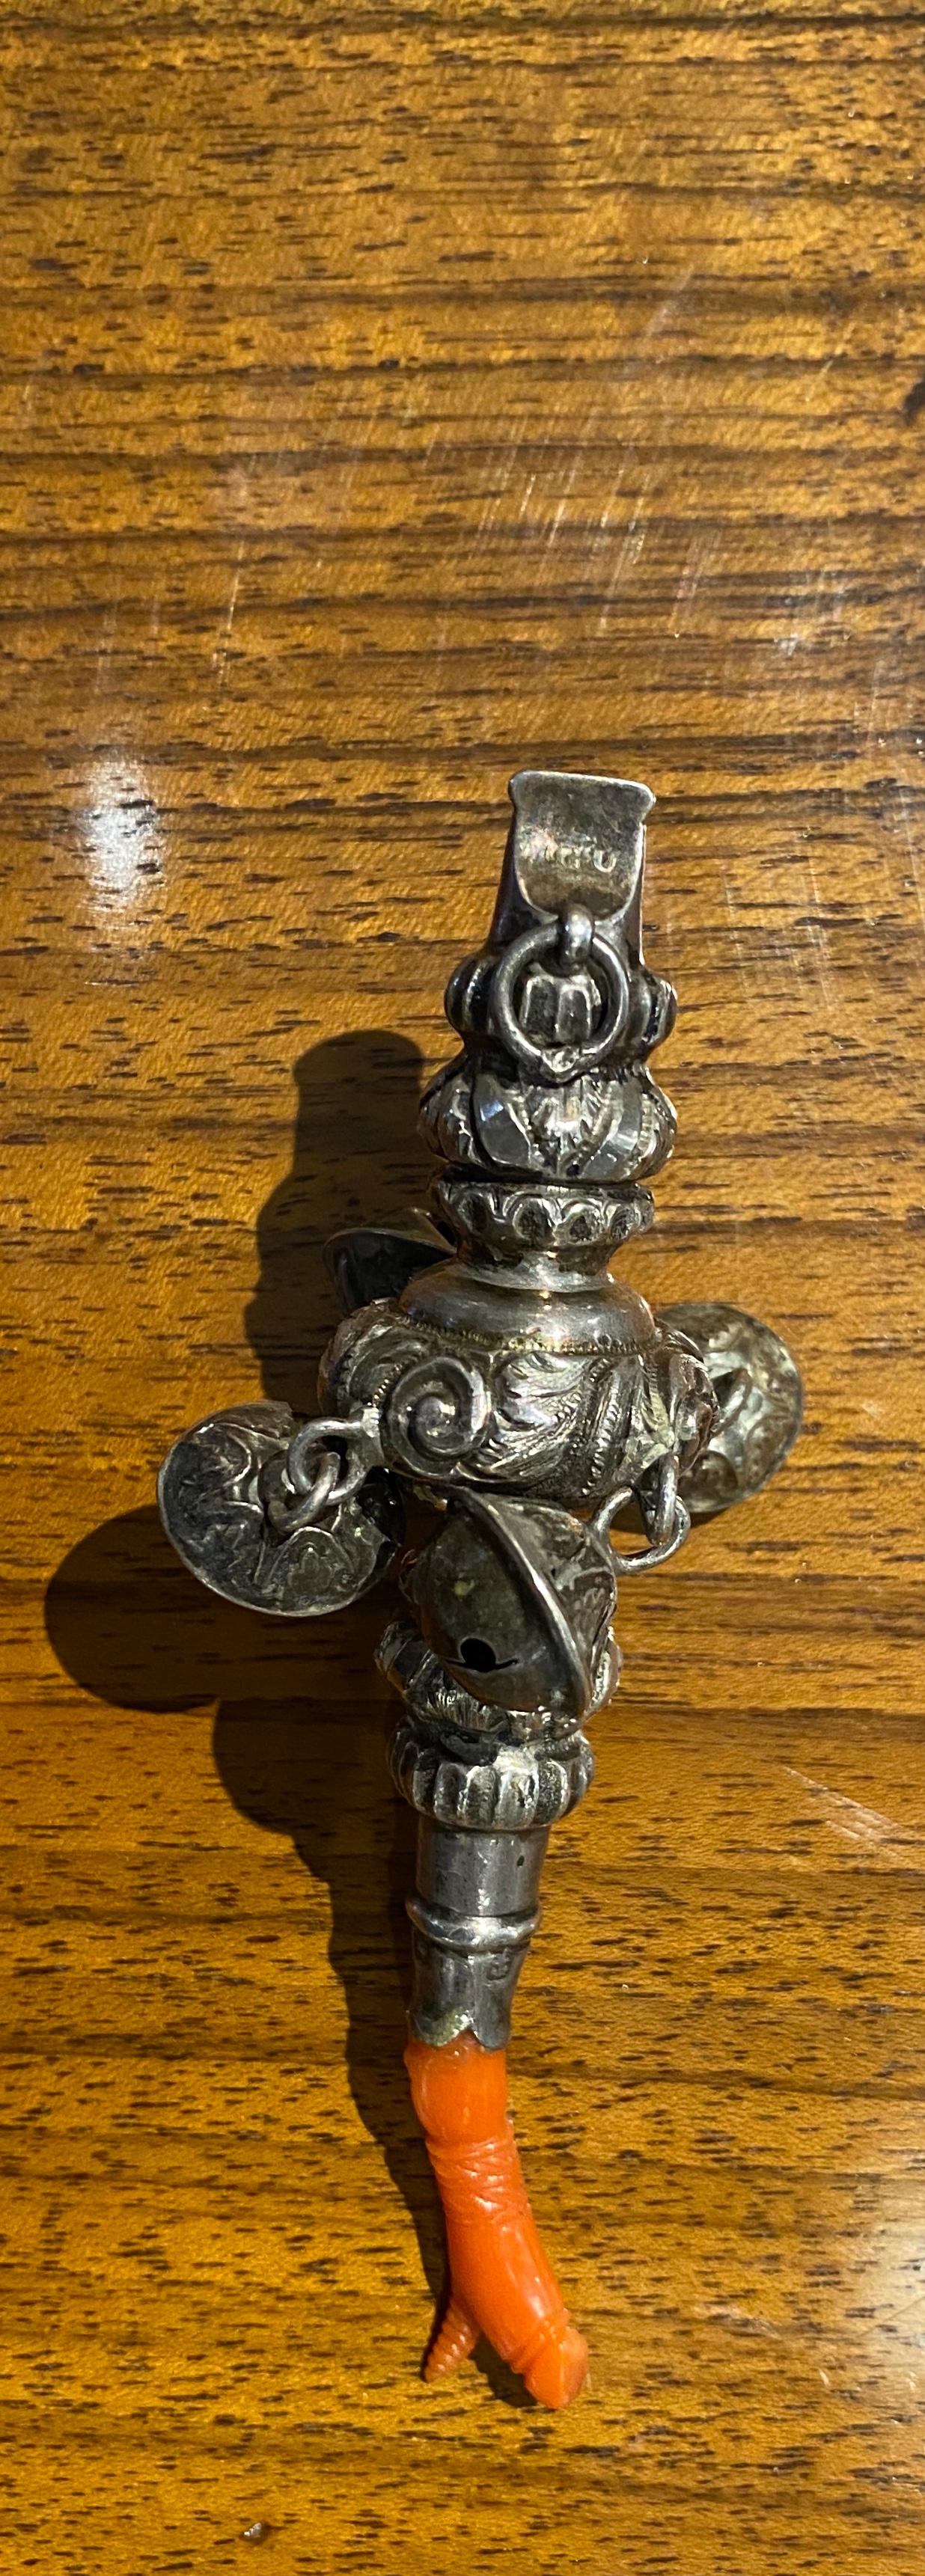 Eine schöne englische viktorianische kombinierte Babyrassel mit einer integrierten Pfeife mit allen Glocken. Oberteil aus Messingguss, Unterteil aus roter Koralle. Birmingham, um 1864. Die Koralle wurde in der Vergangenheit zur Förderung der